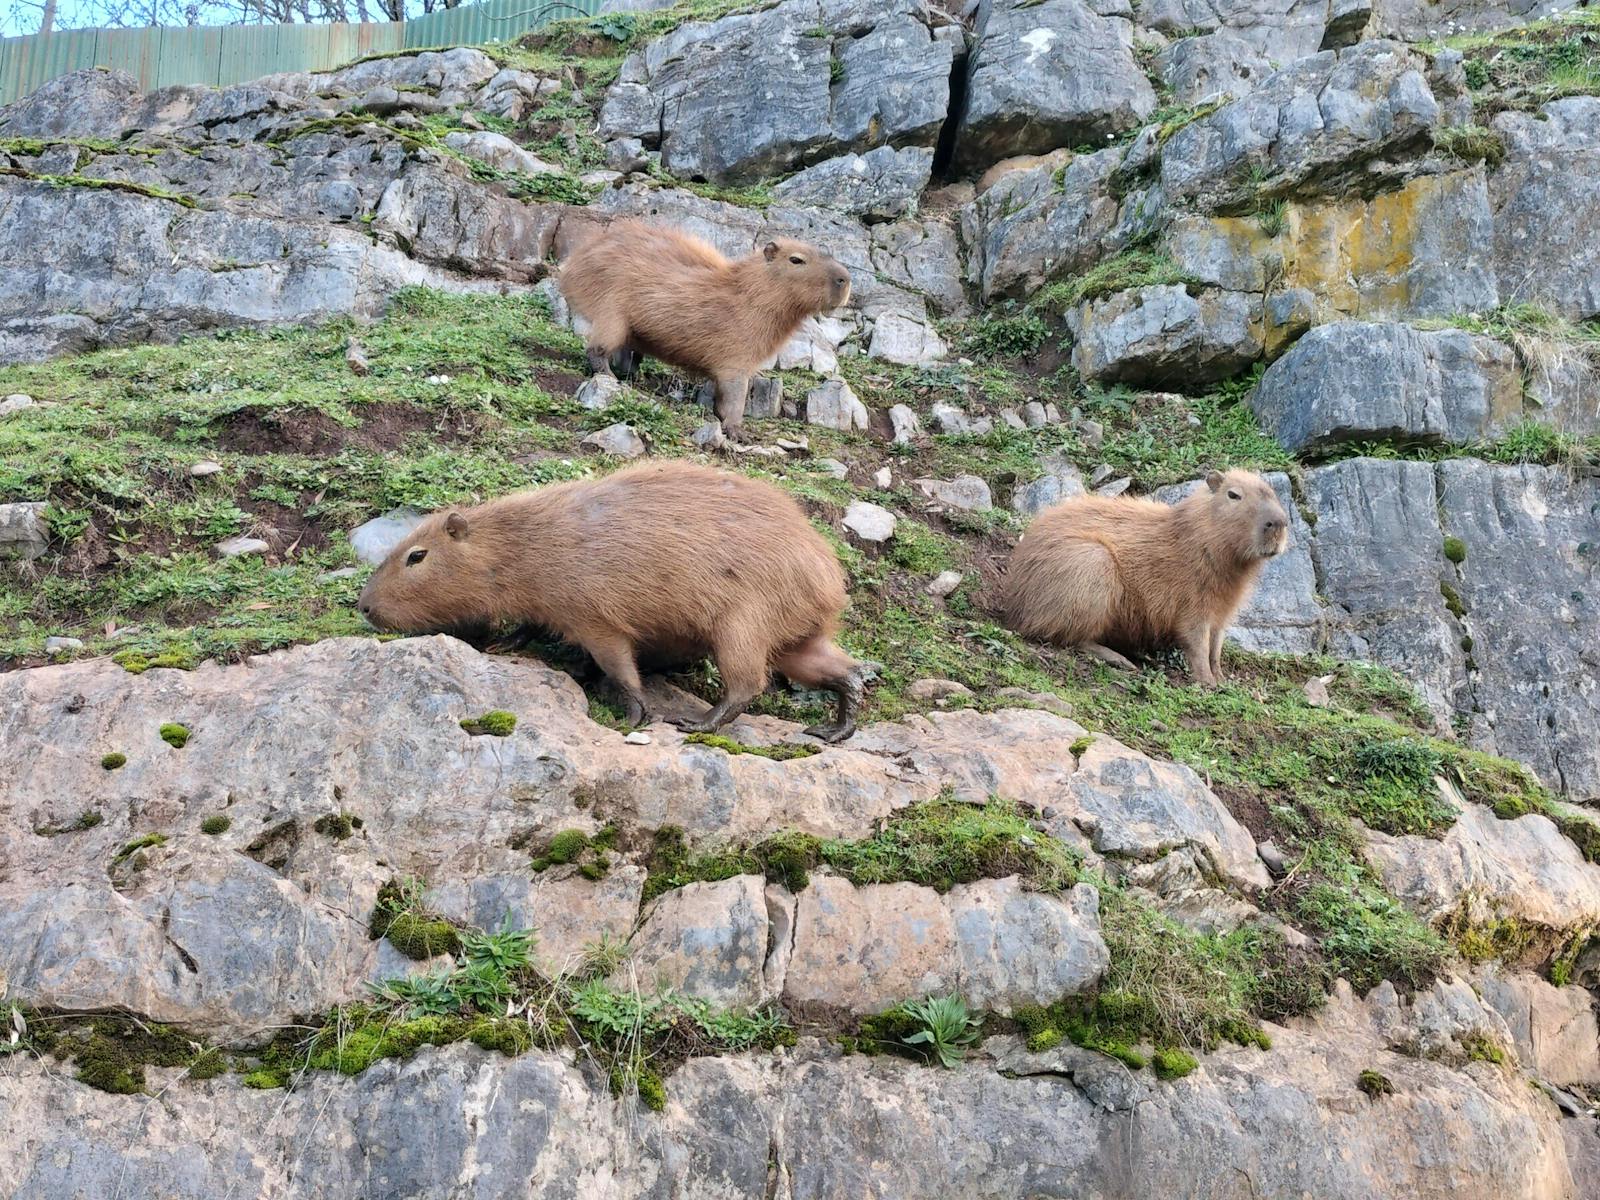 Capybara's